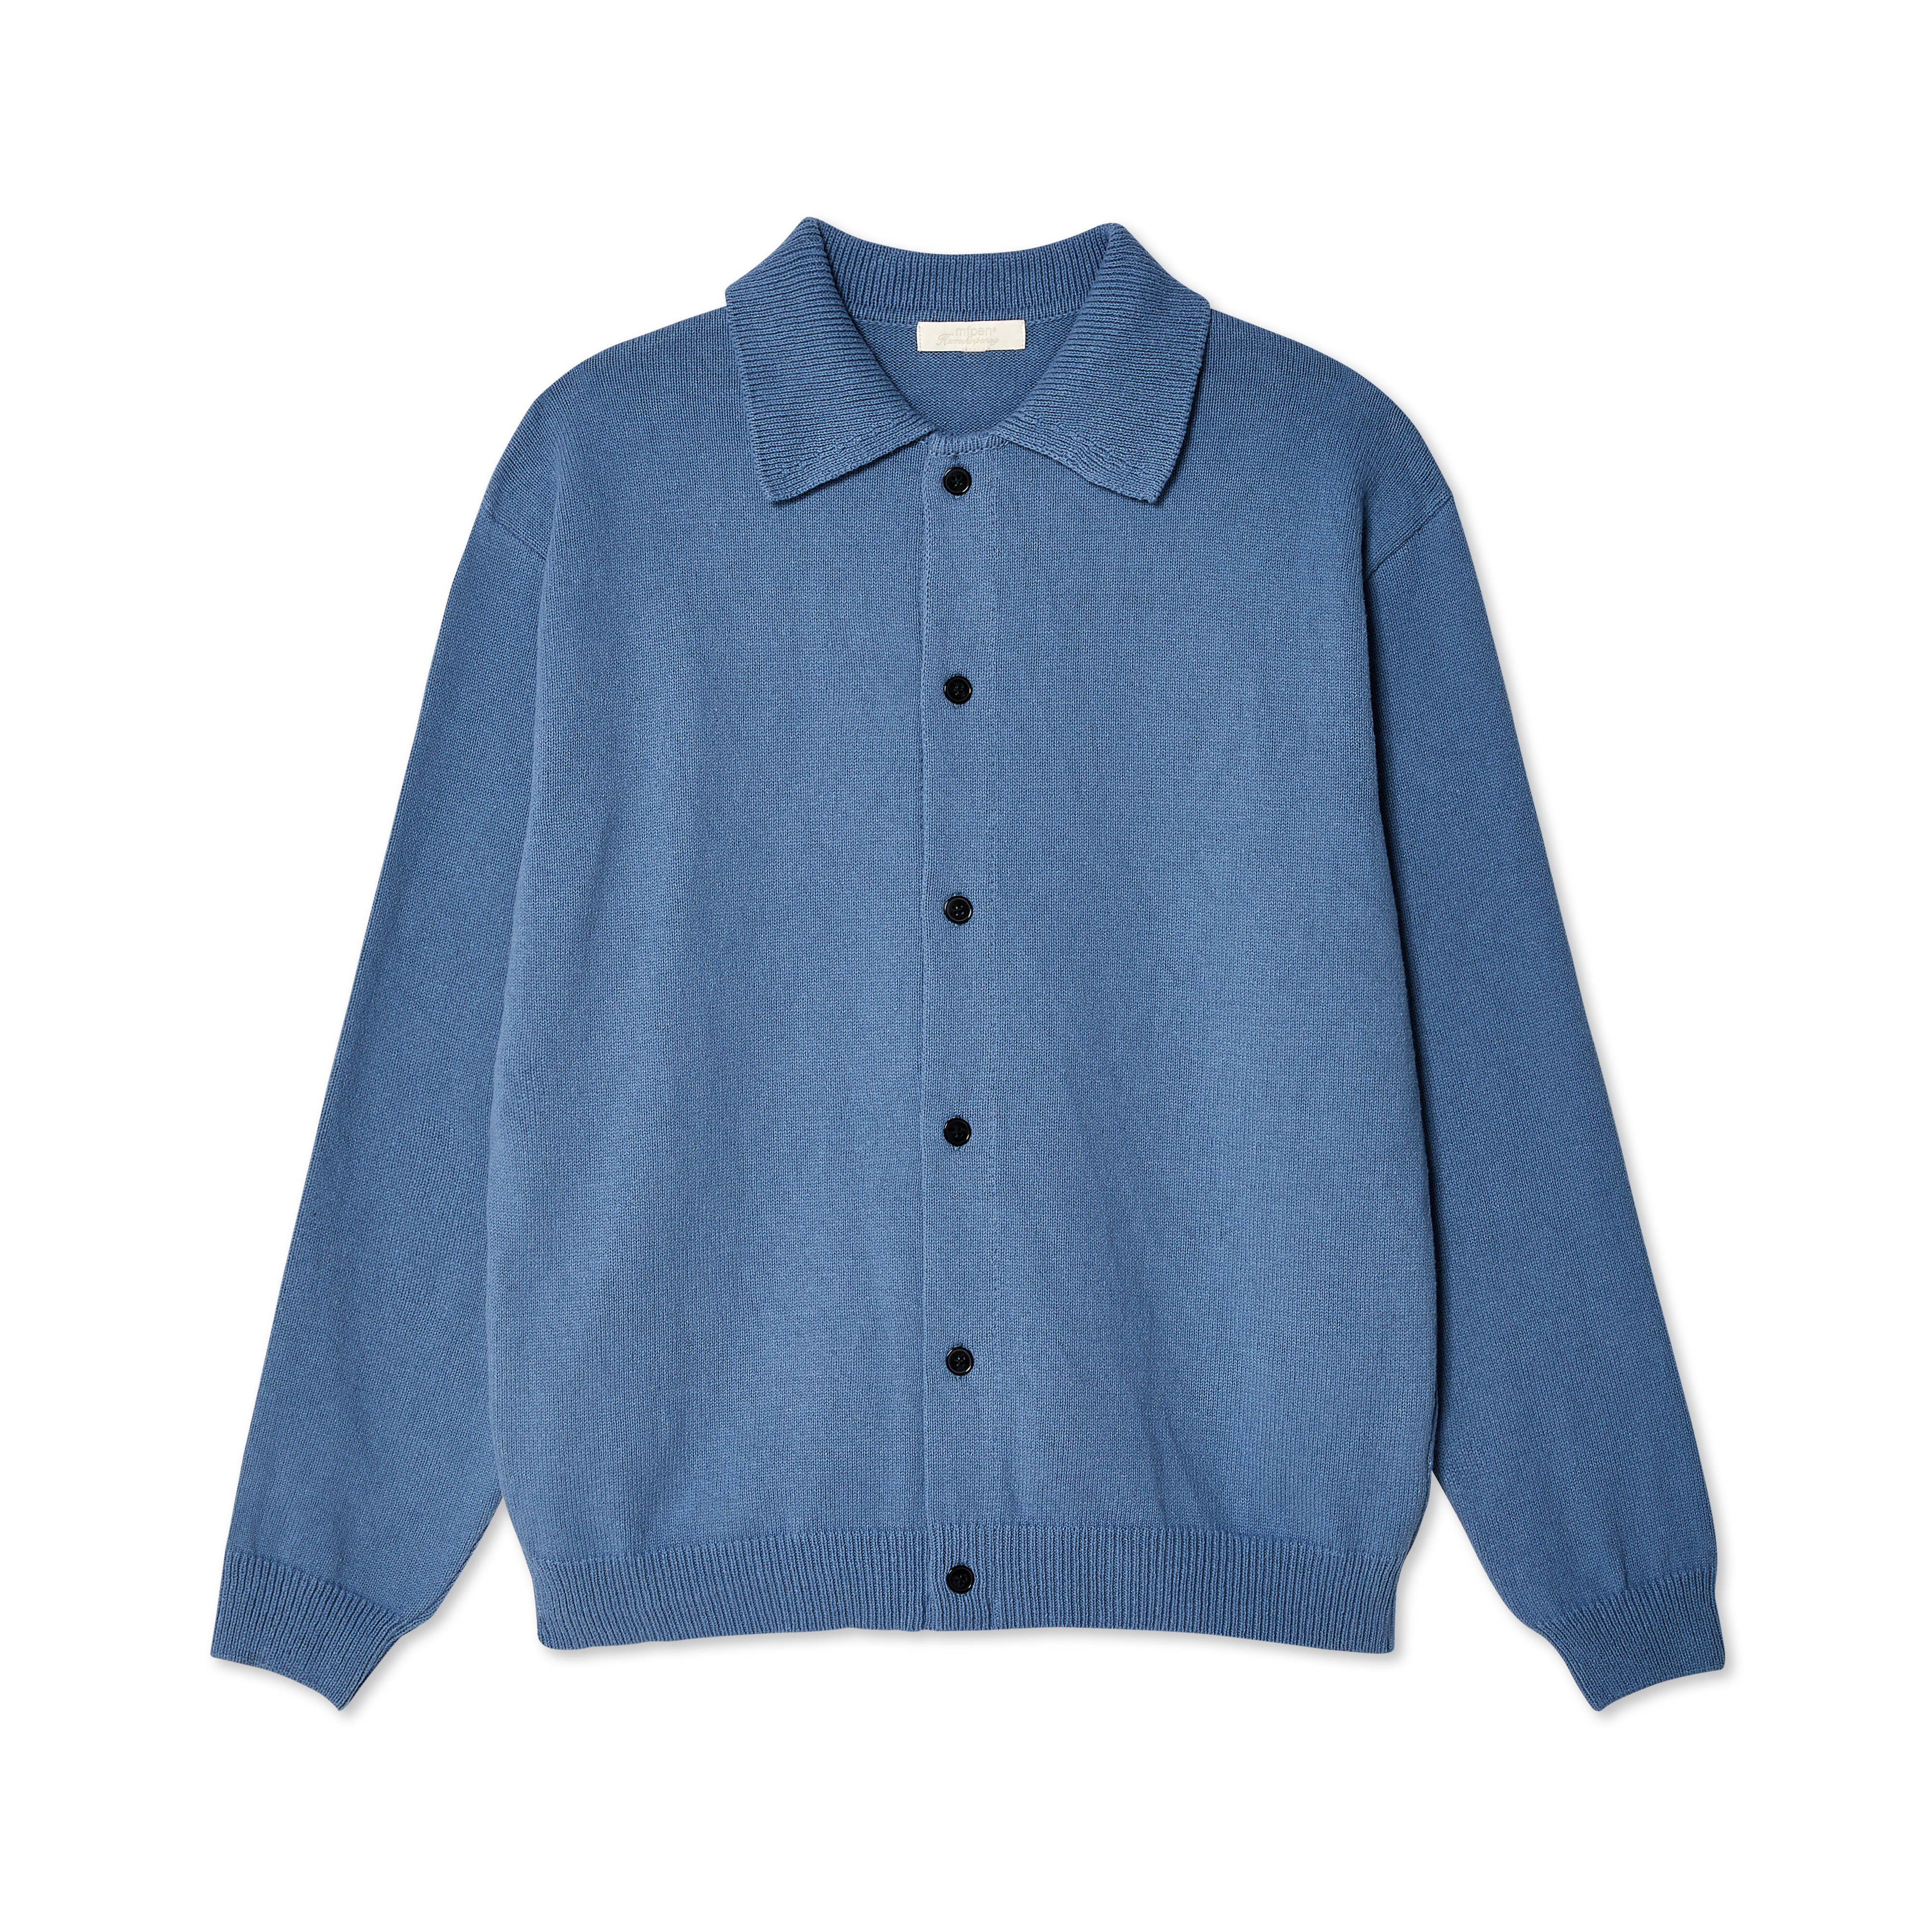 MFPen - Men's Formal Polo Shirt - (Blue)